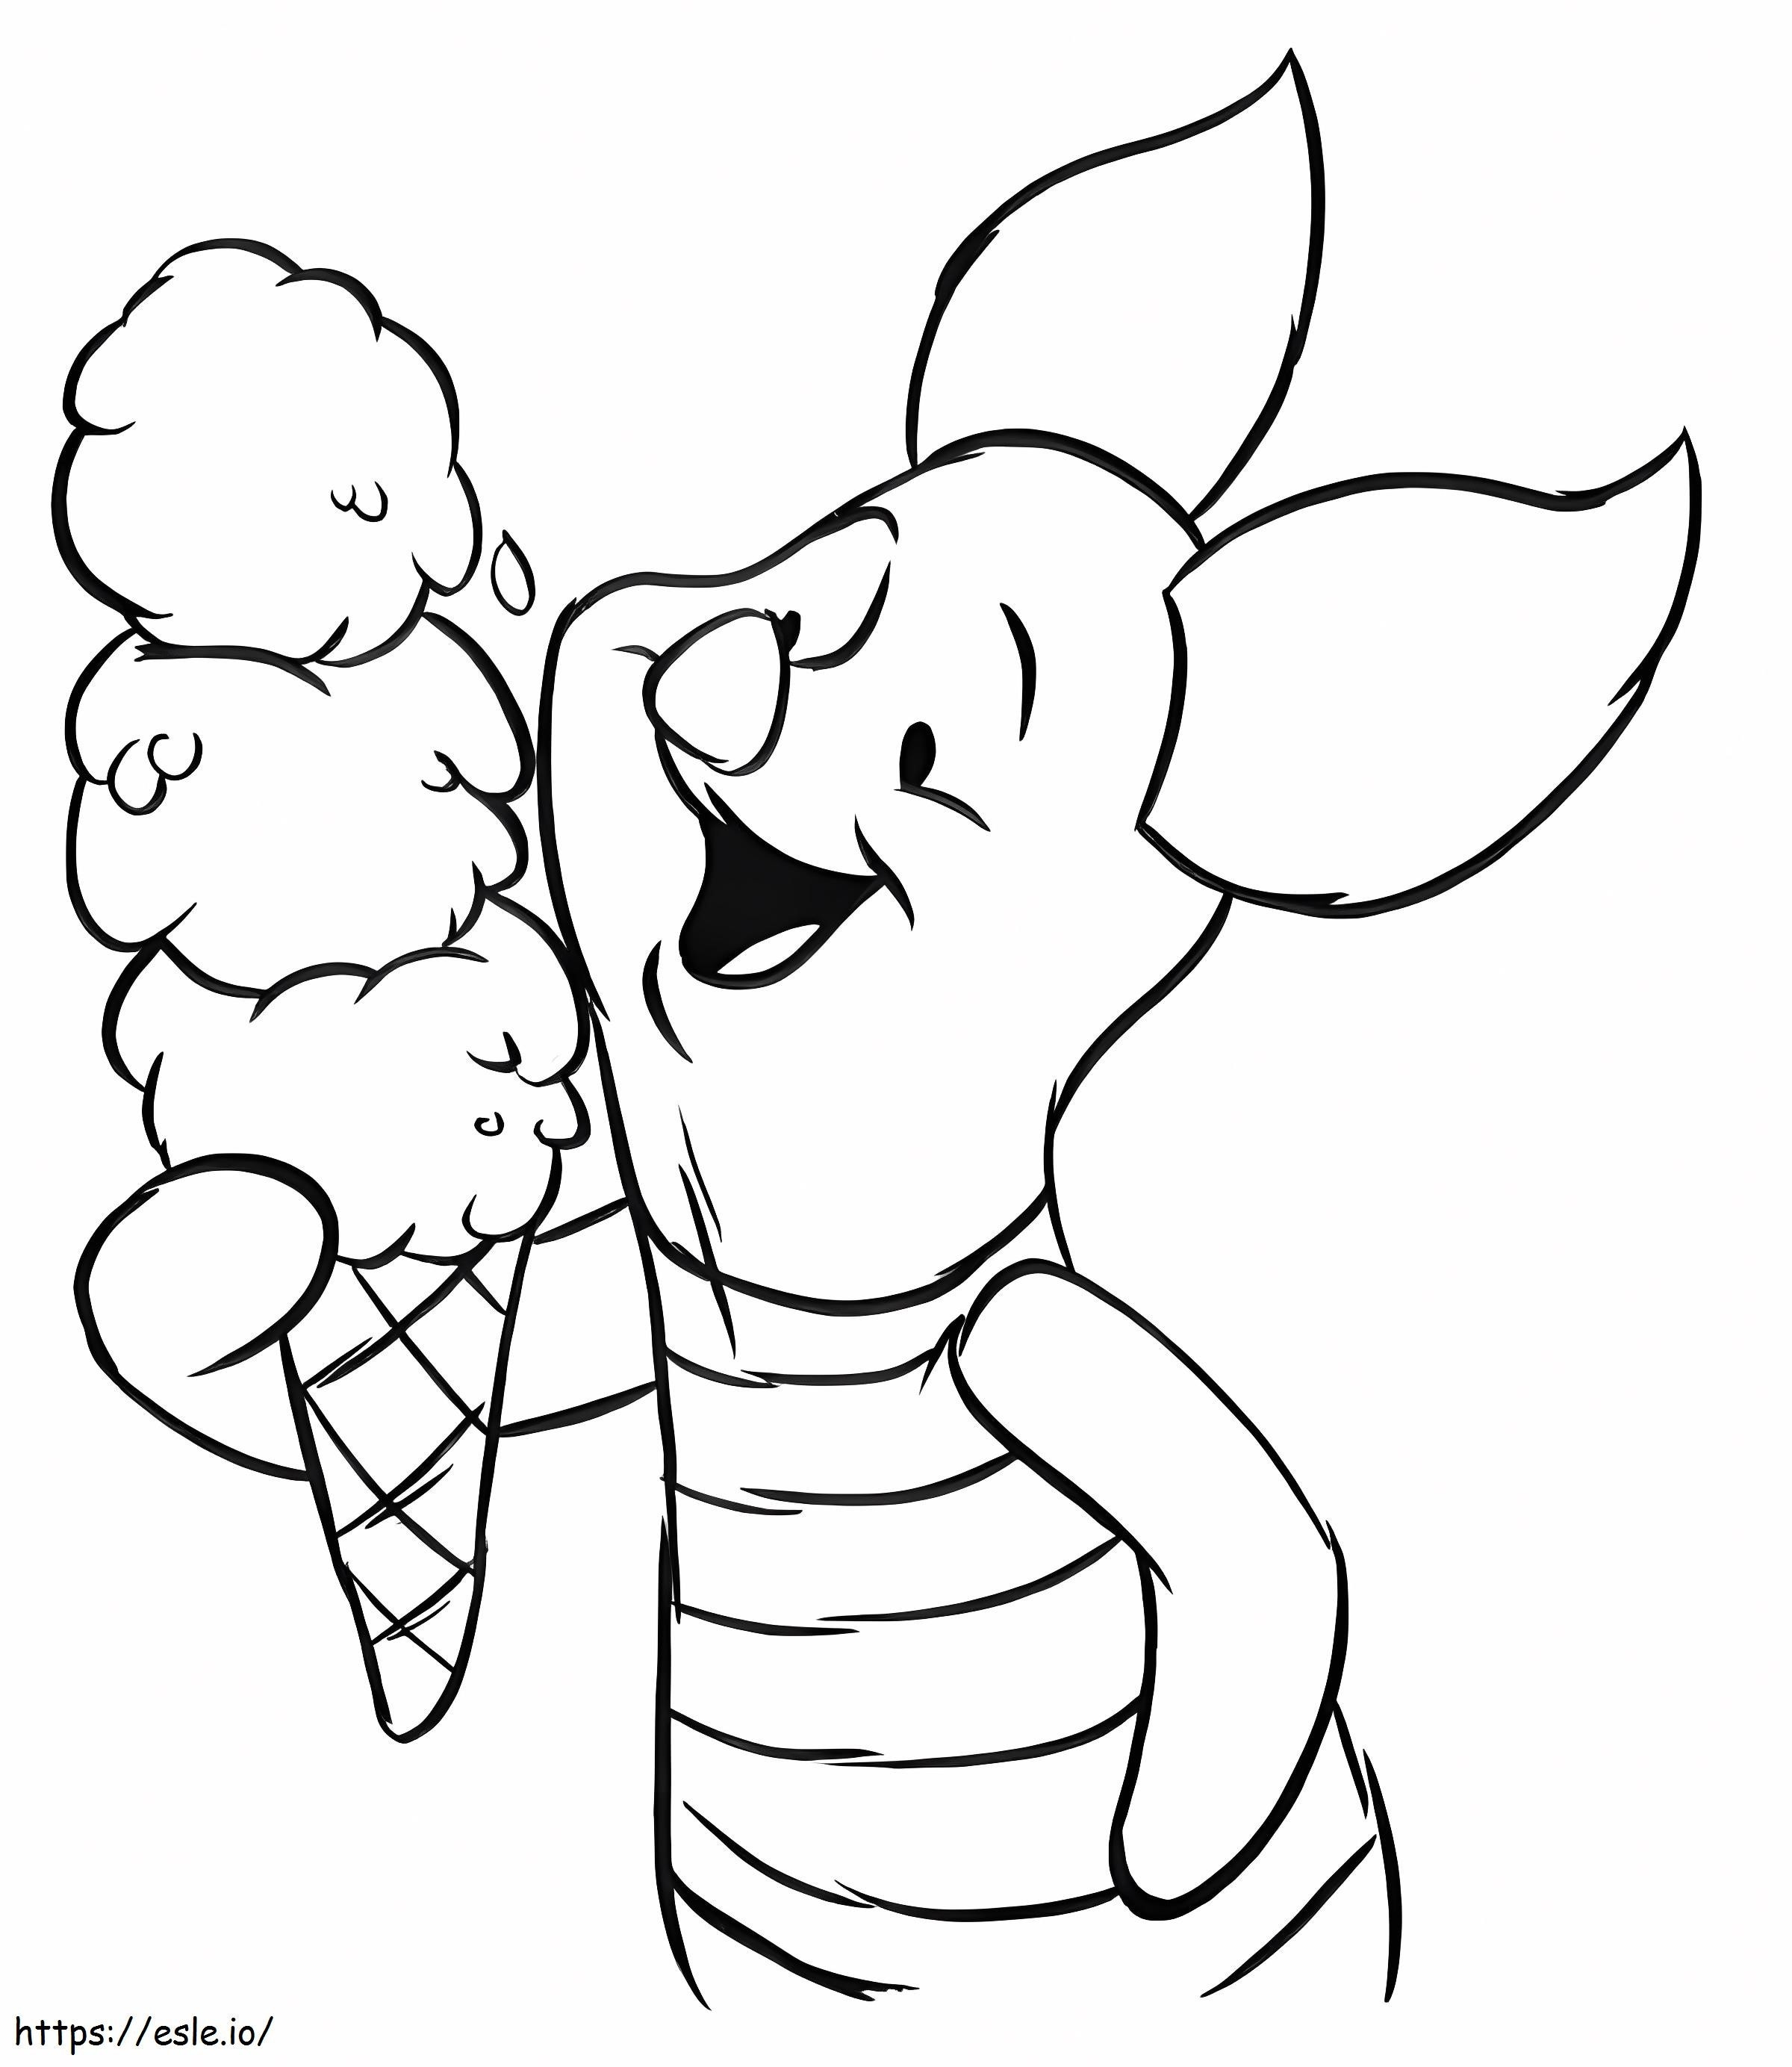 Malacka malac eszik fagylaltot kifestő